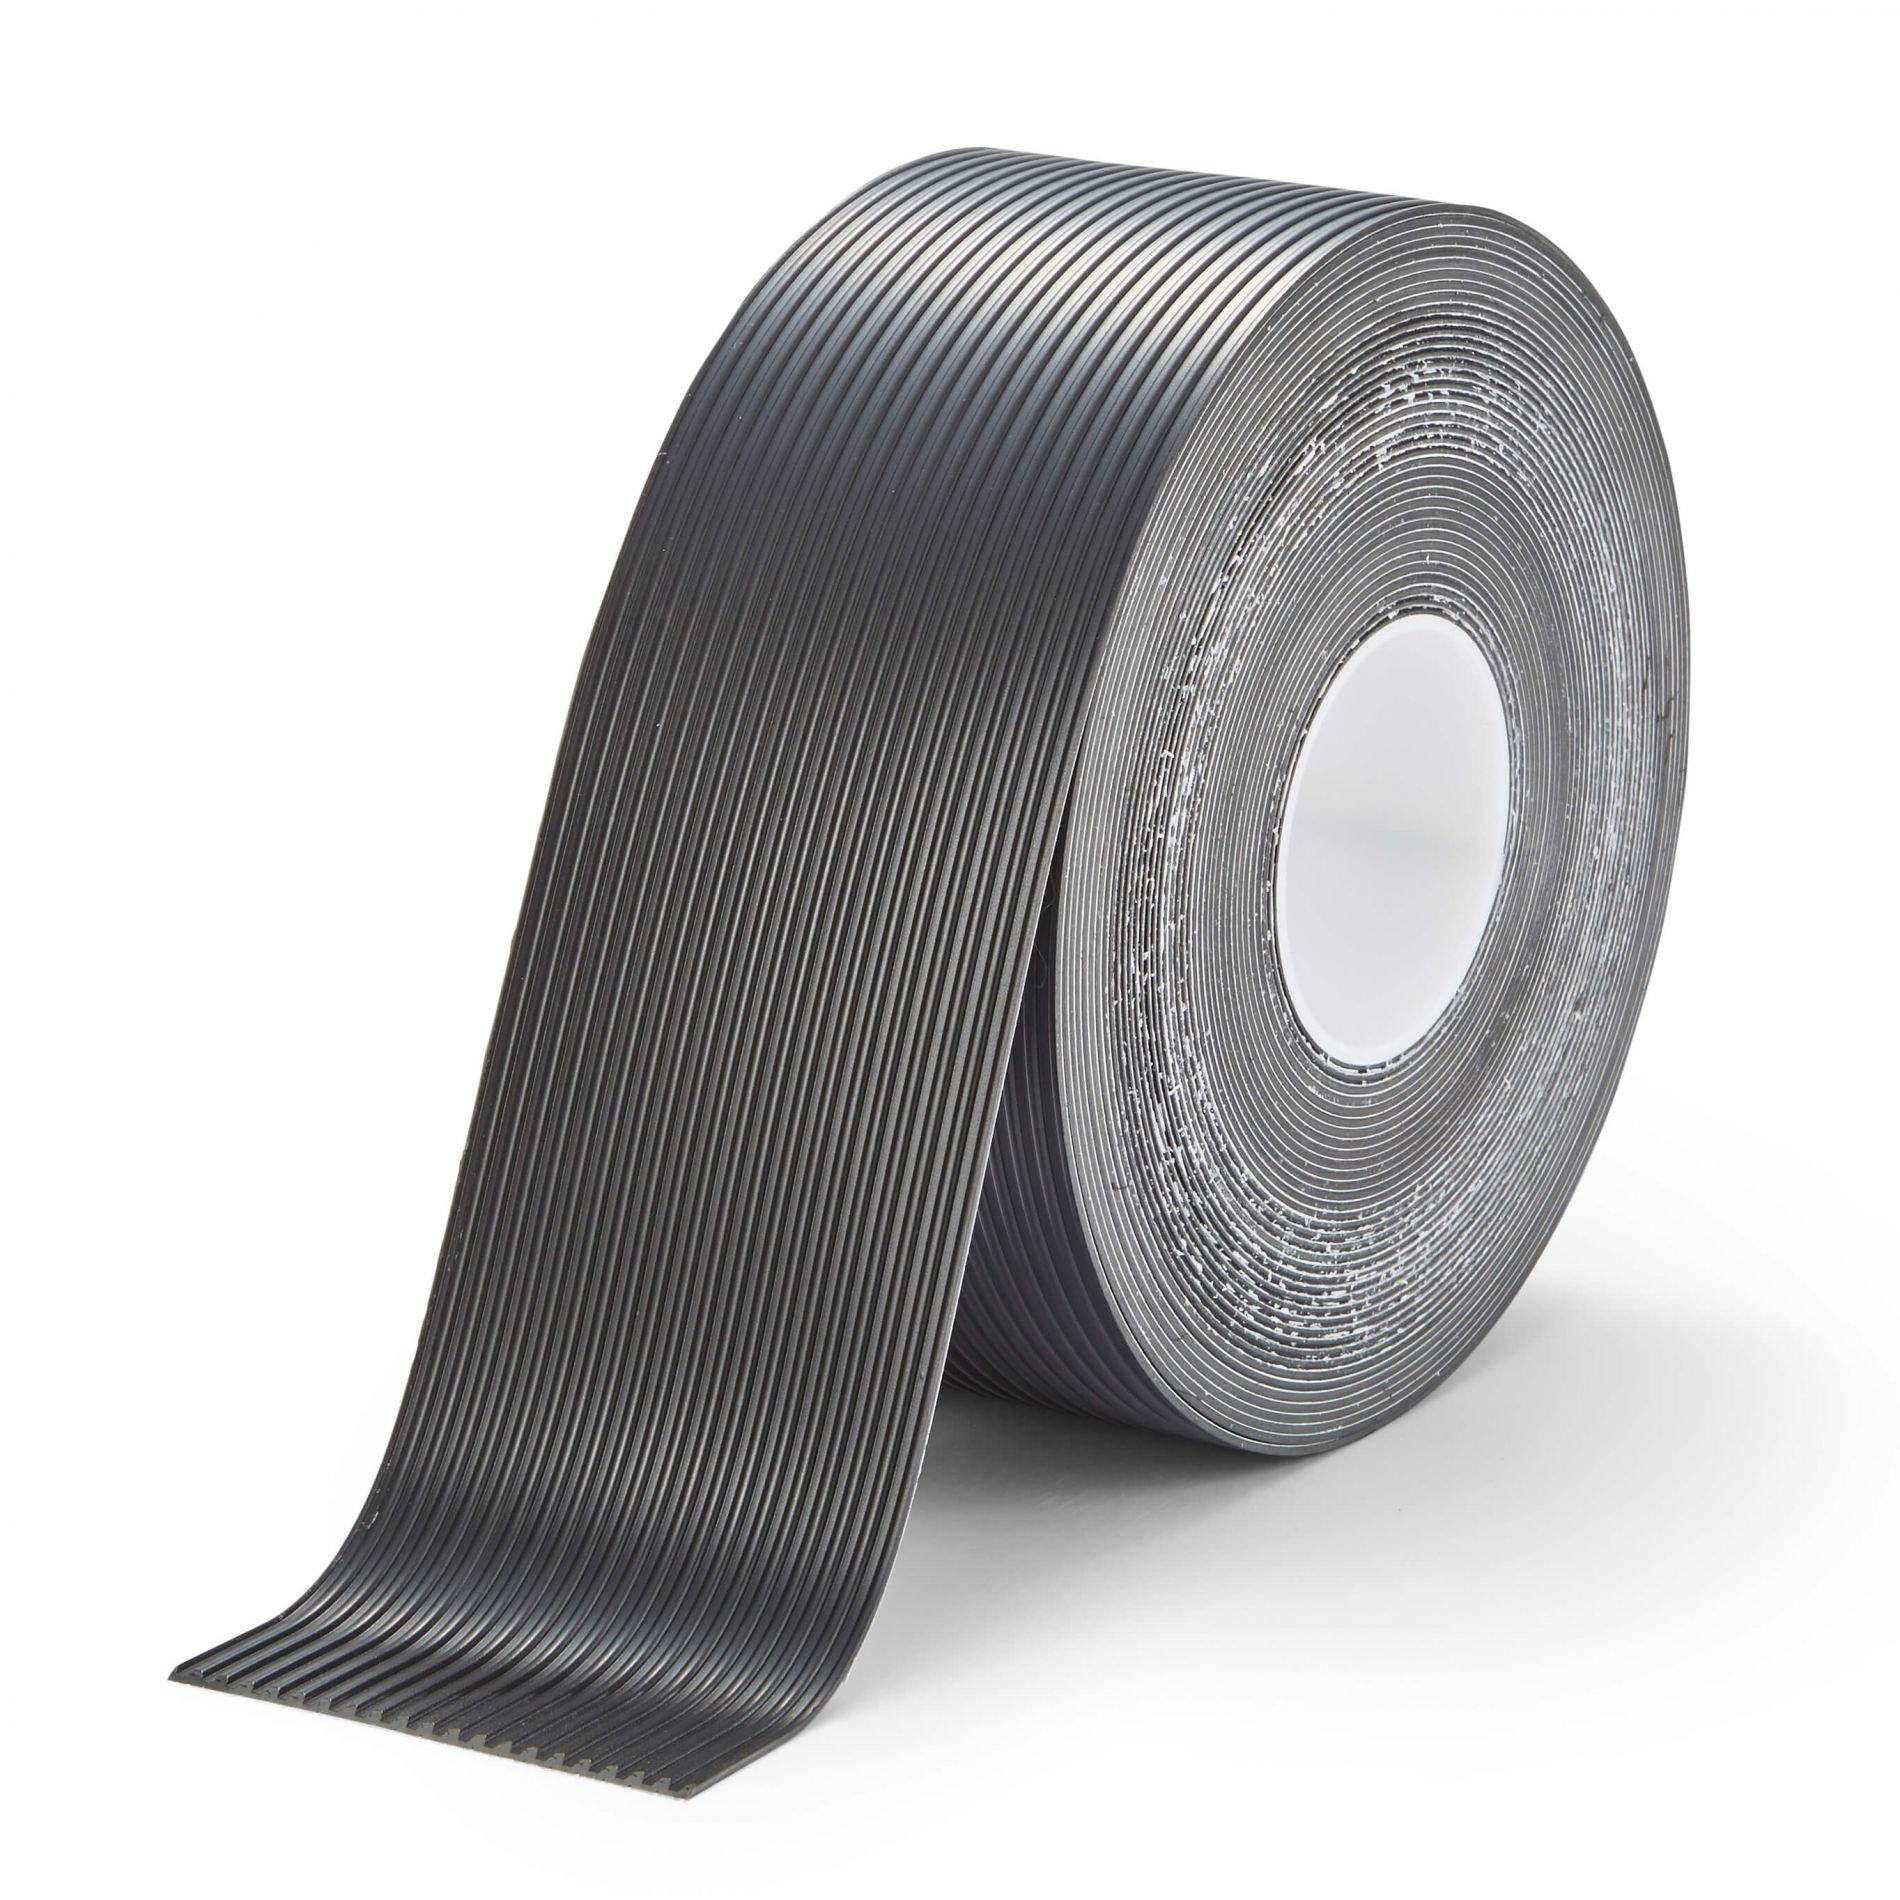 Anti-slip rubber ribbed tape